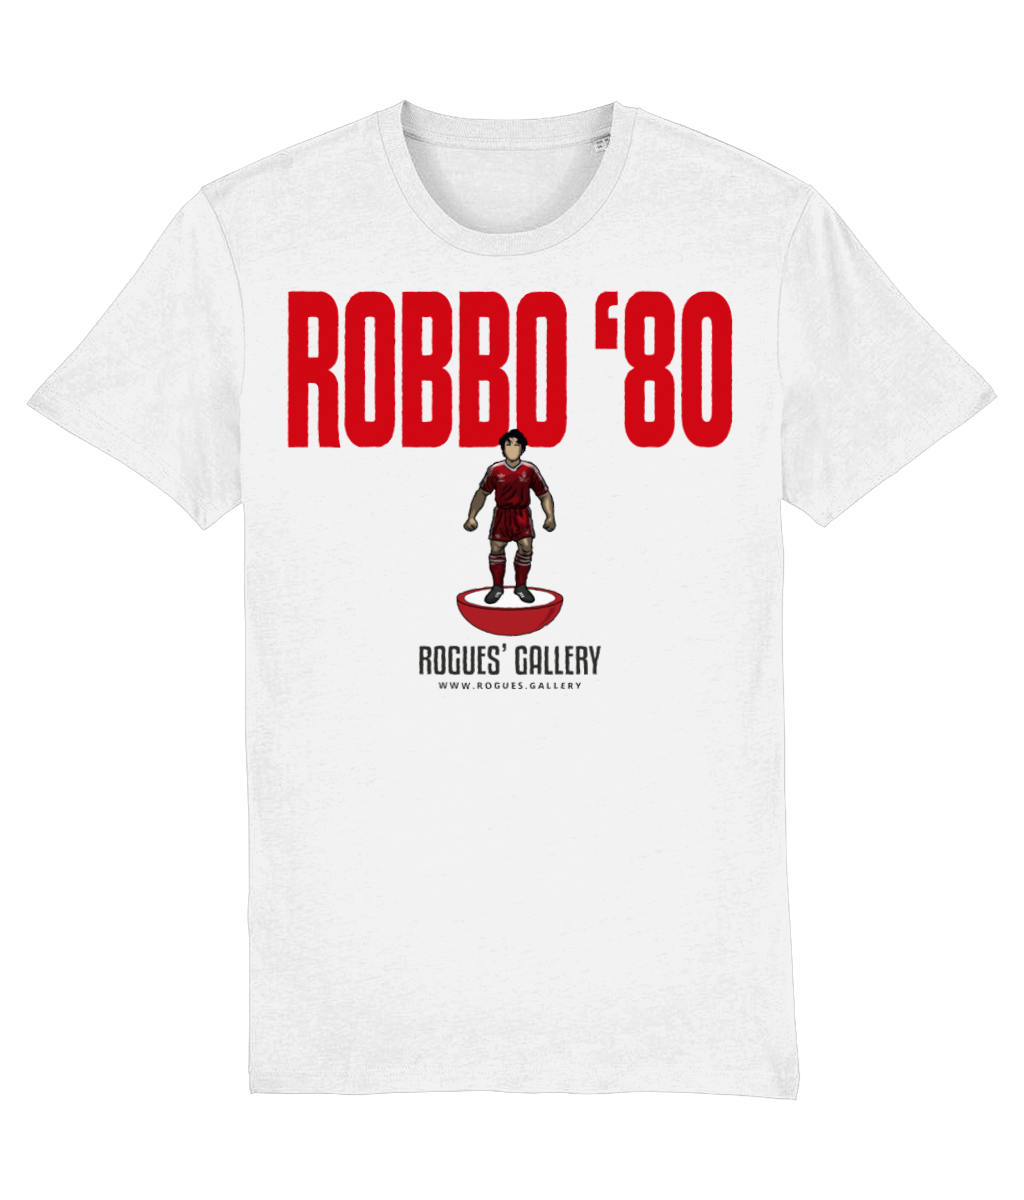 Robbo 80 Deluxe T-Shirt